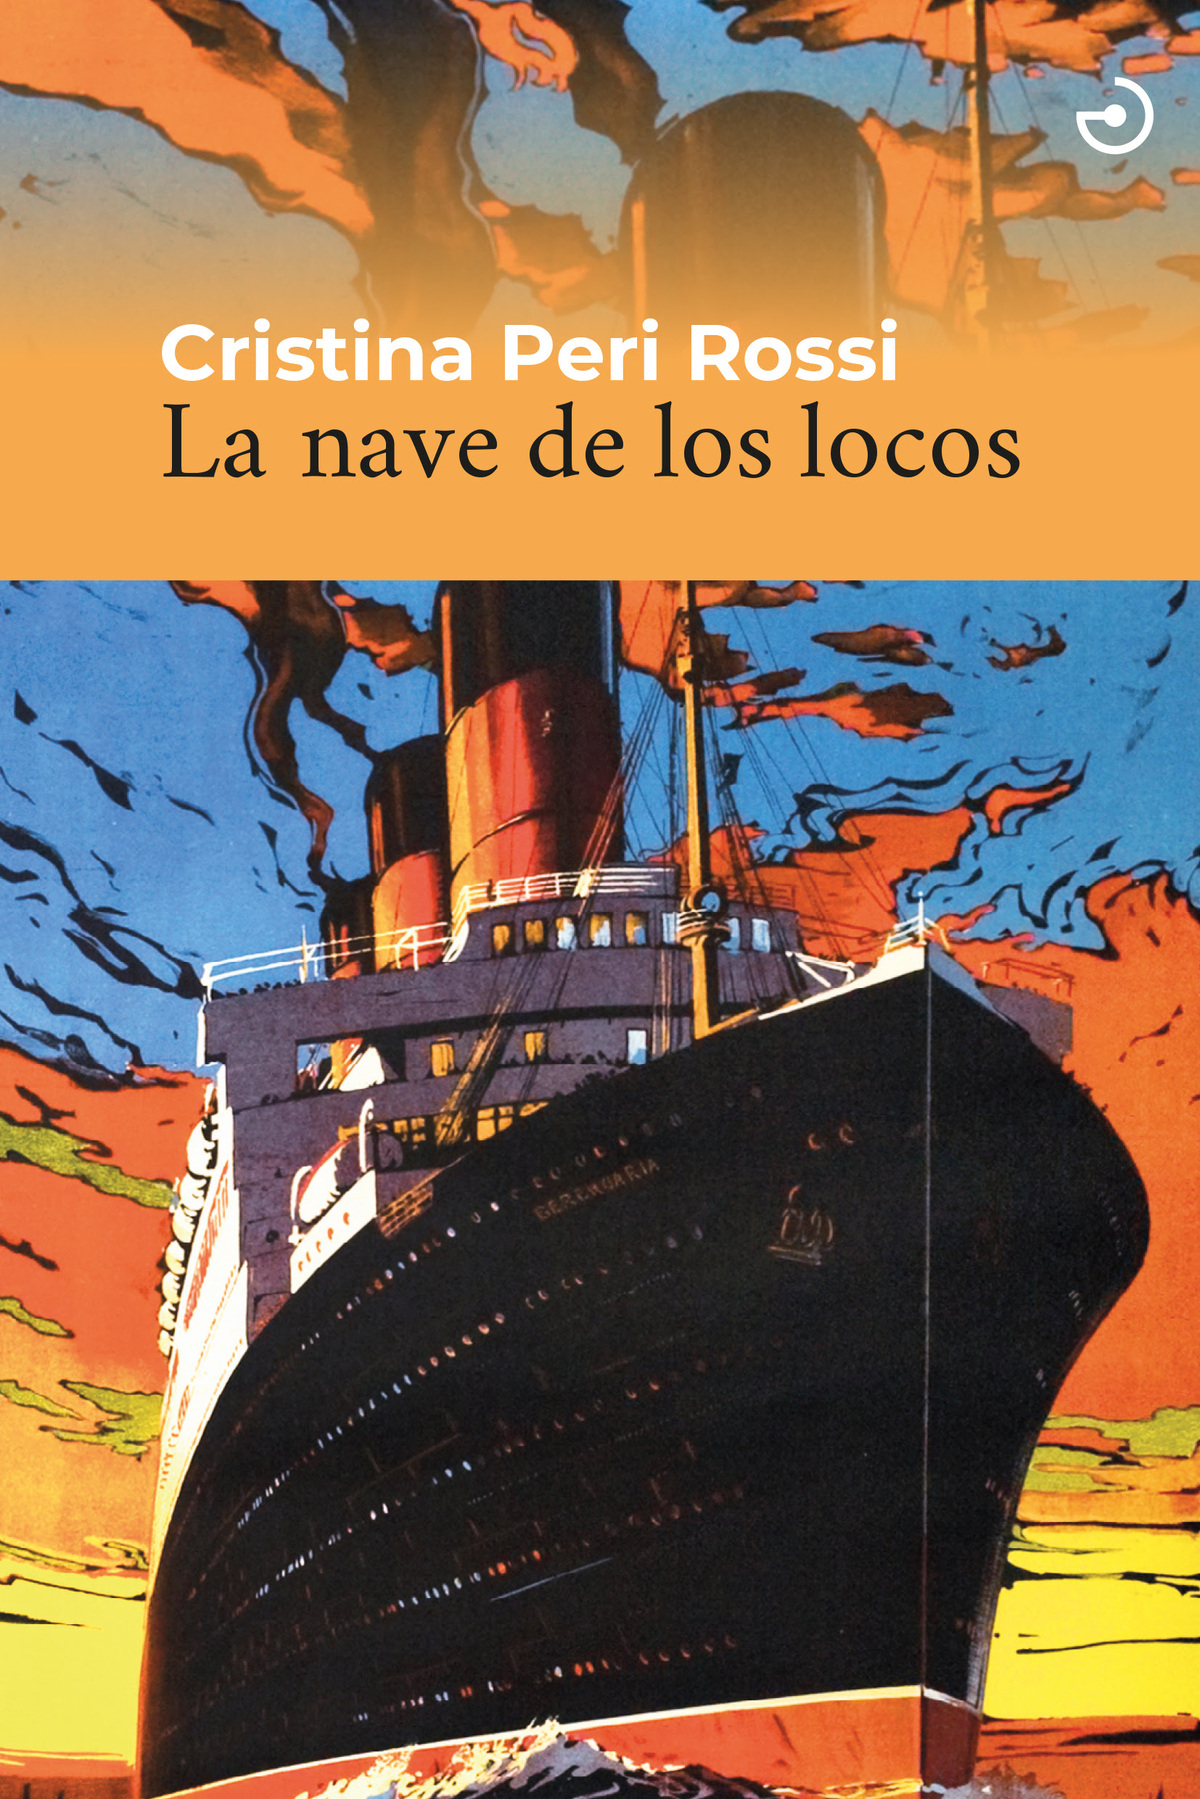 La nave de los locos, de Cristina Peri Rossi